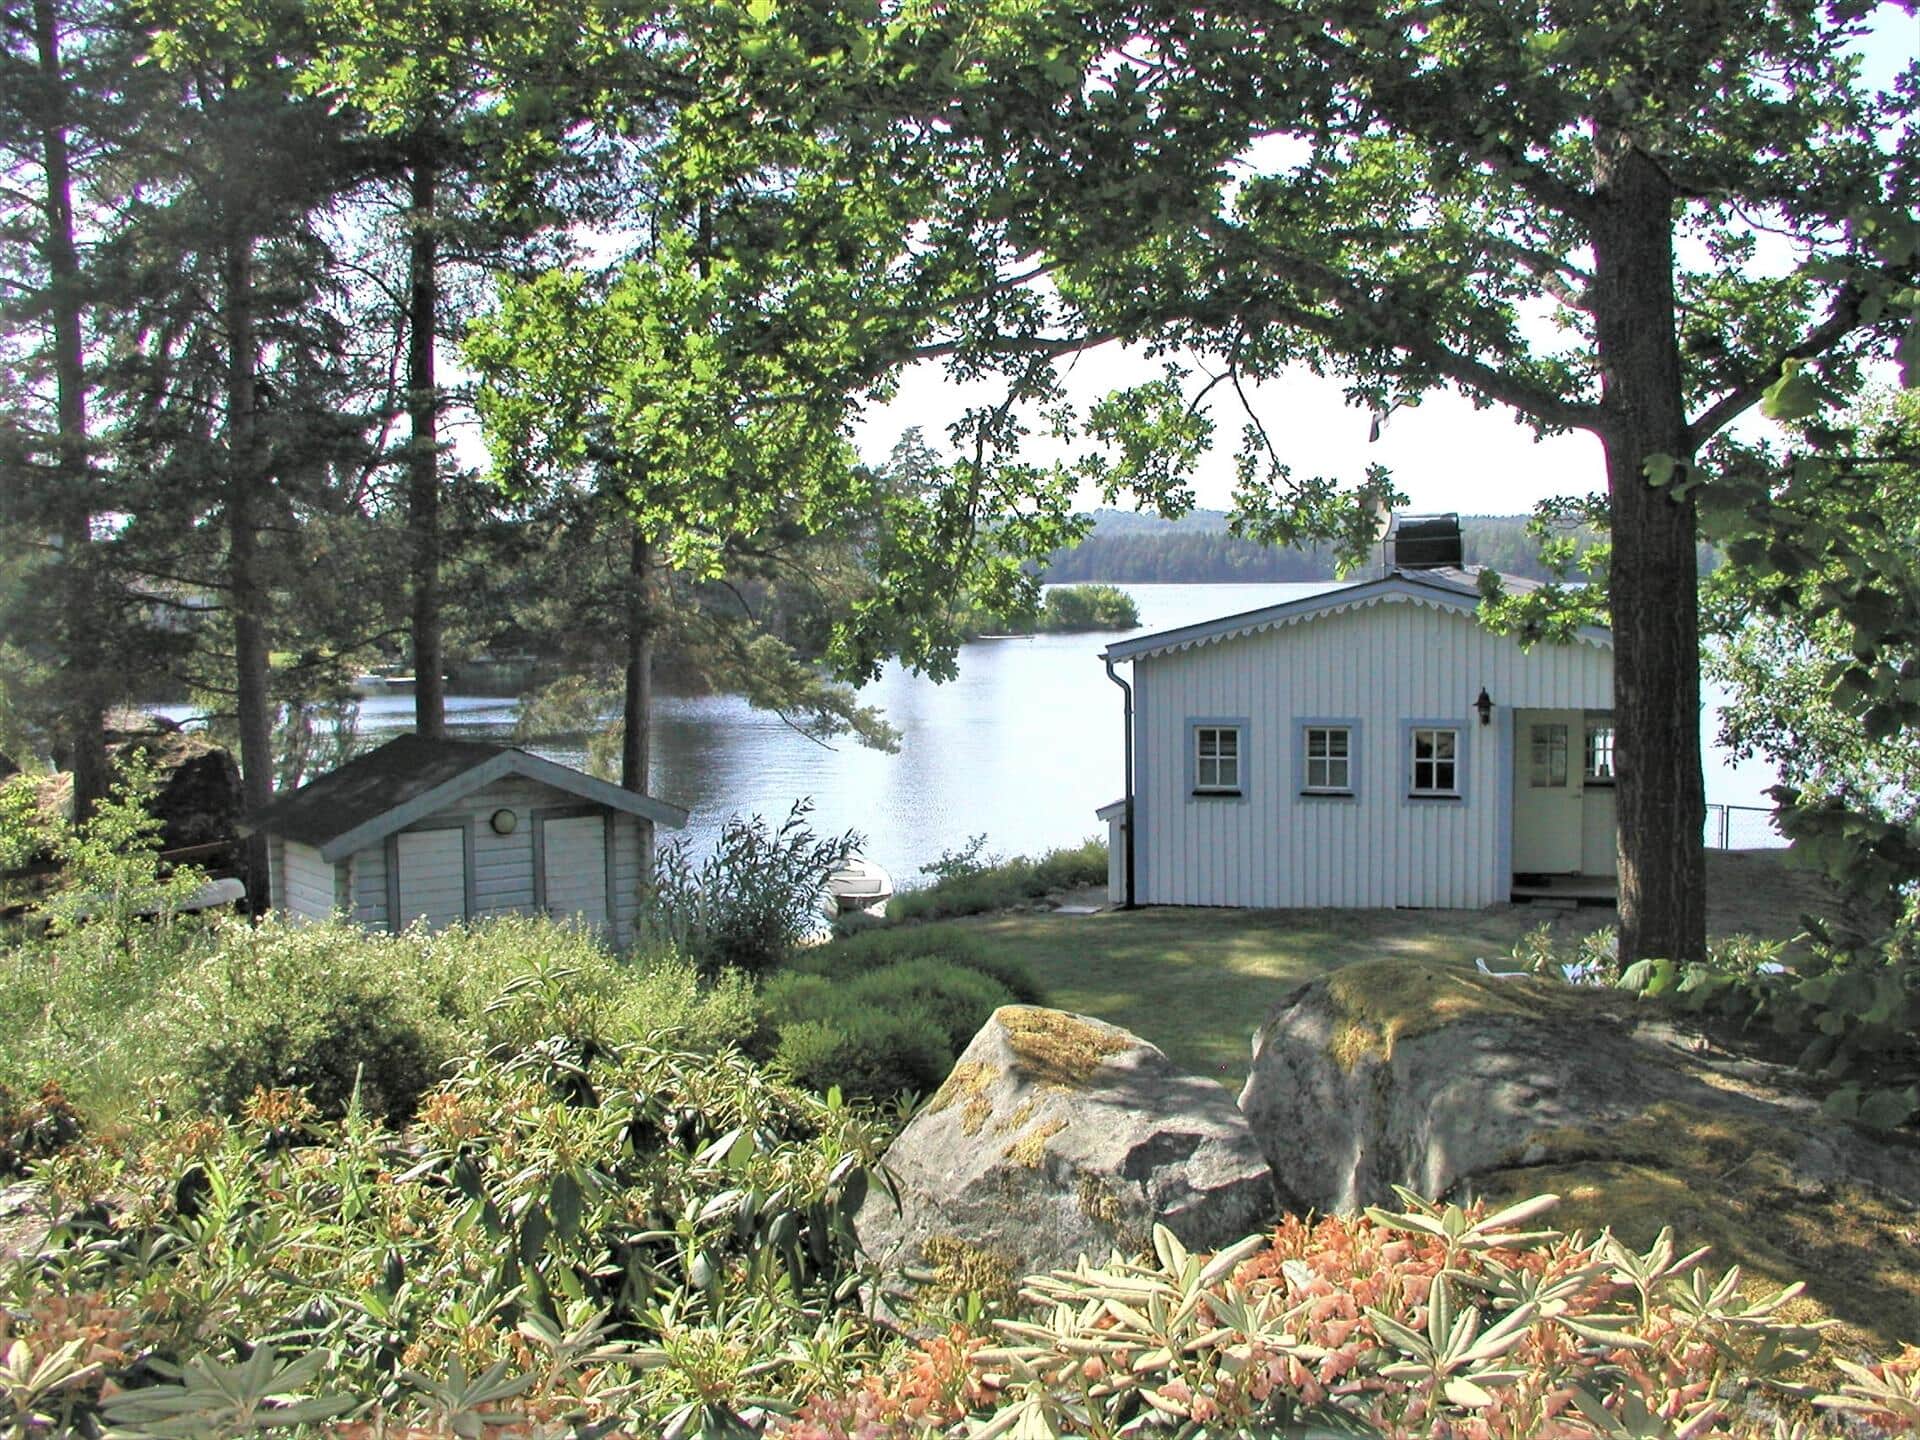 Bild 2-171 Ferienhaus KAL171, Badstigen 17, DK - 570 80 Virserum